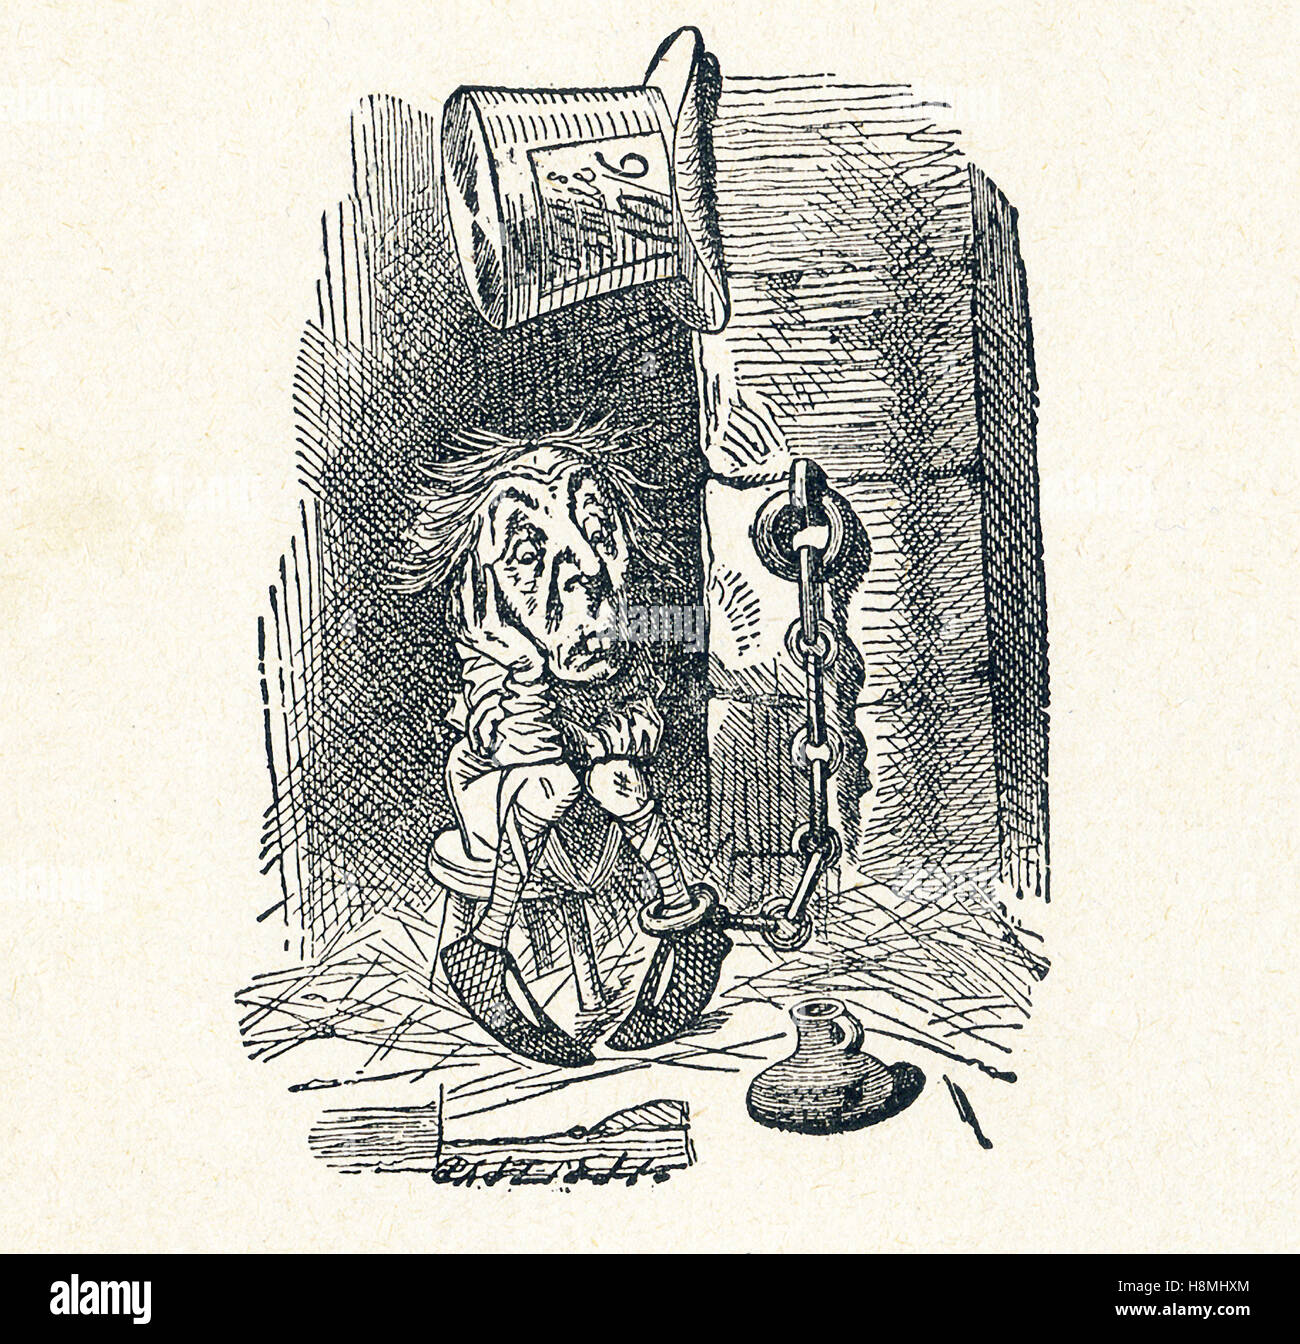 Dies ist eine Szene aus was Alice sah, einmal ging es durch den Spiegel und in den Spiegel-Raum in Carrolls "Through the Looking Glass." Hier sehen Sie des weißen Königs Gesandten im Gefängnis warten auf Ihren Prozess. Lewis Carroll (Charles Lutwidge Dodgson) schrieb den Roman "Through the Looking-Glass und was Alice fand es" im Jahre 1871 als Fortsetzung zu "Alices Abenteuer im Wunderland." Stockfoto